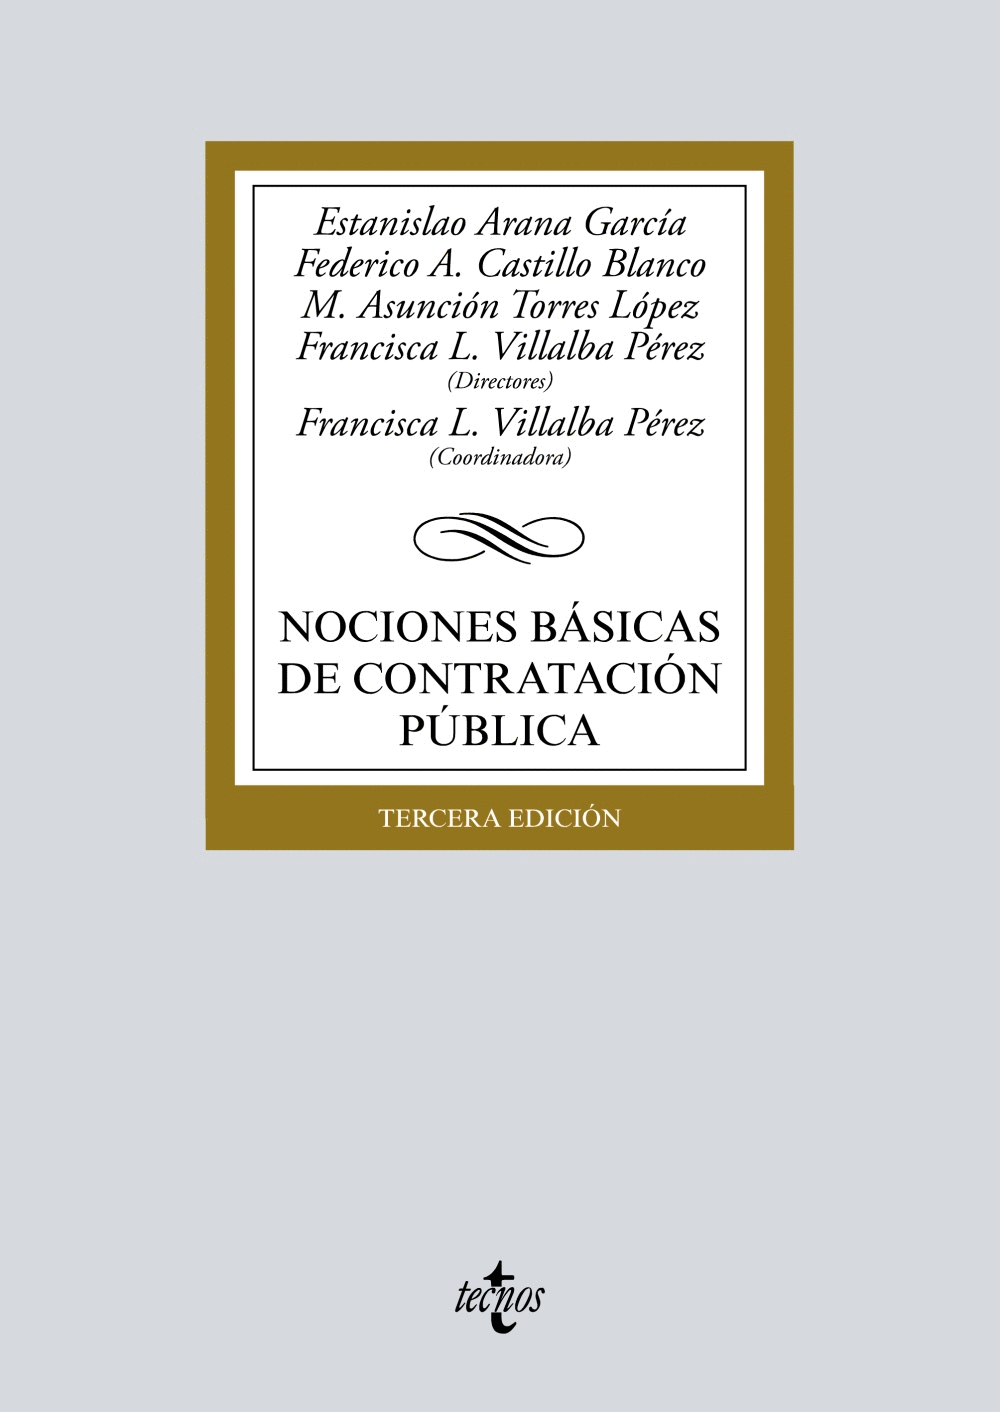 NOCIONES BÁSICAS DE CONTRATACIÓN PÚBLICA